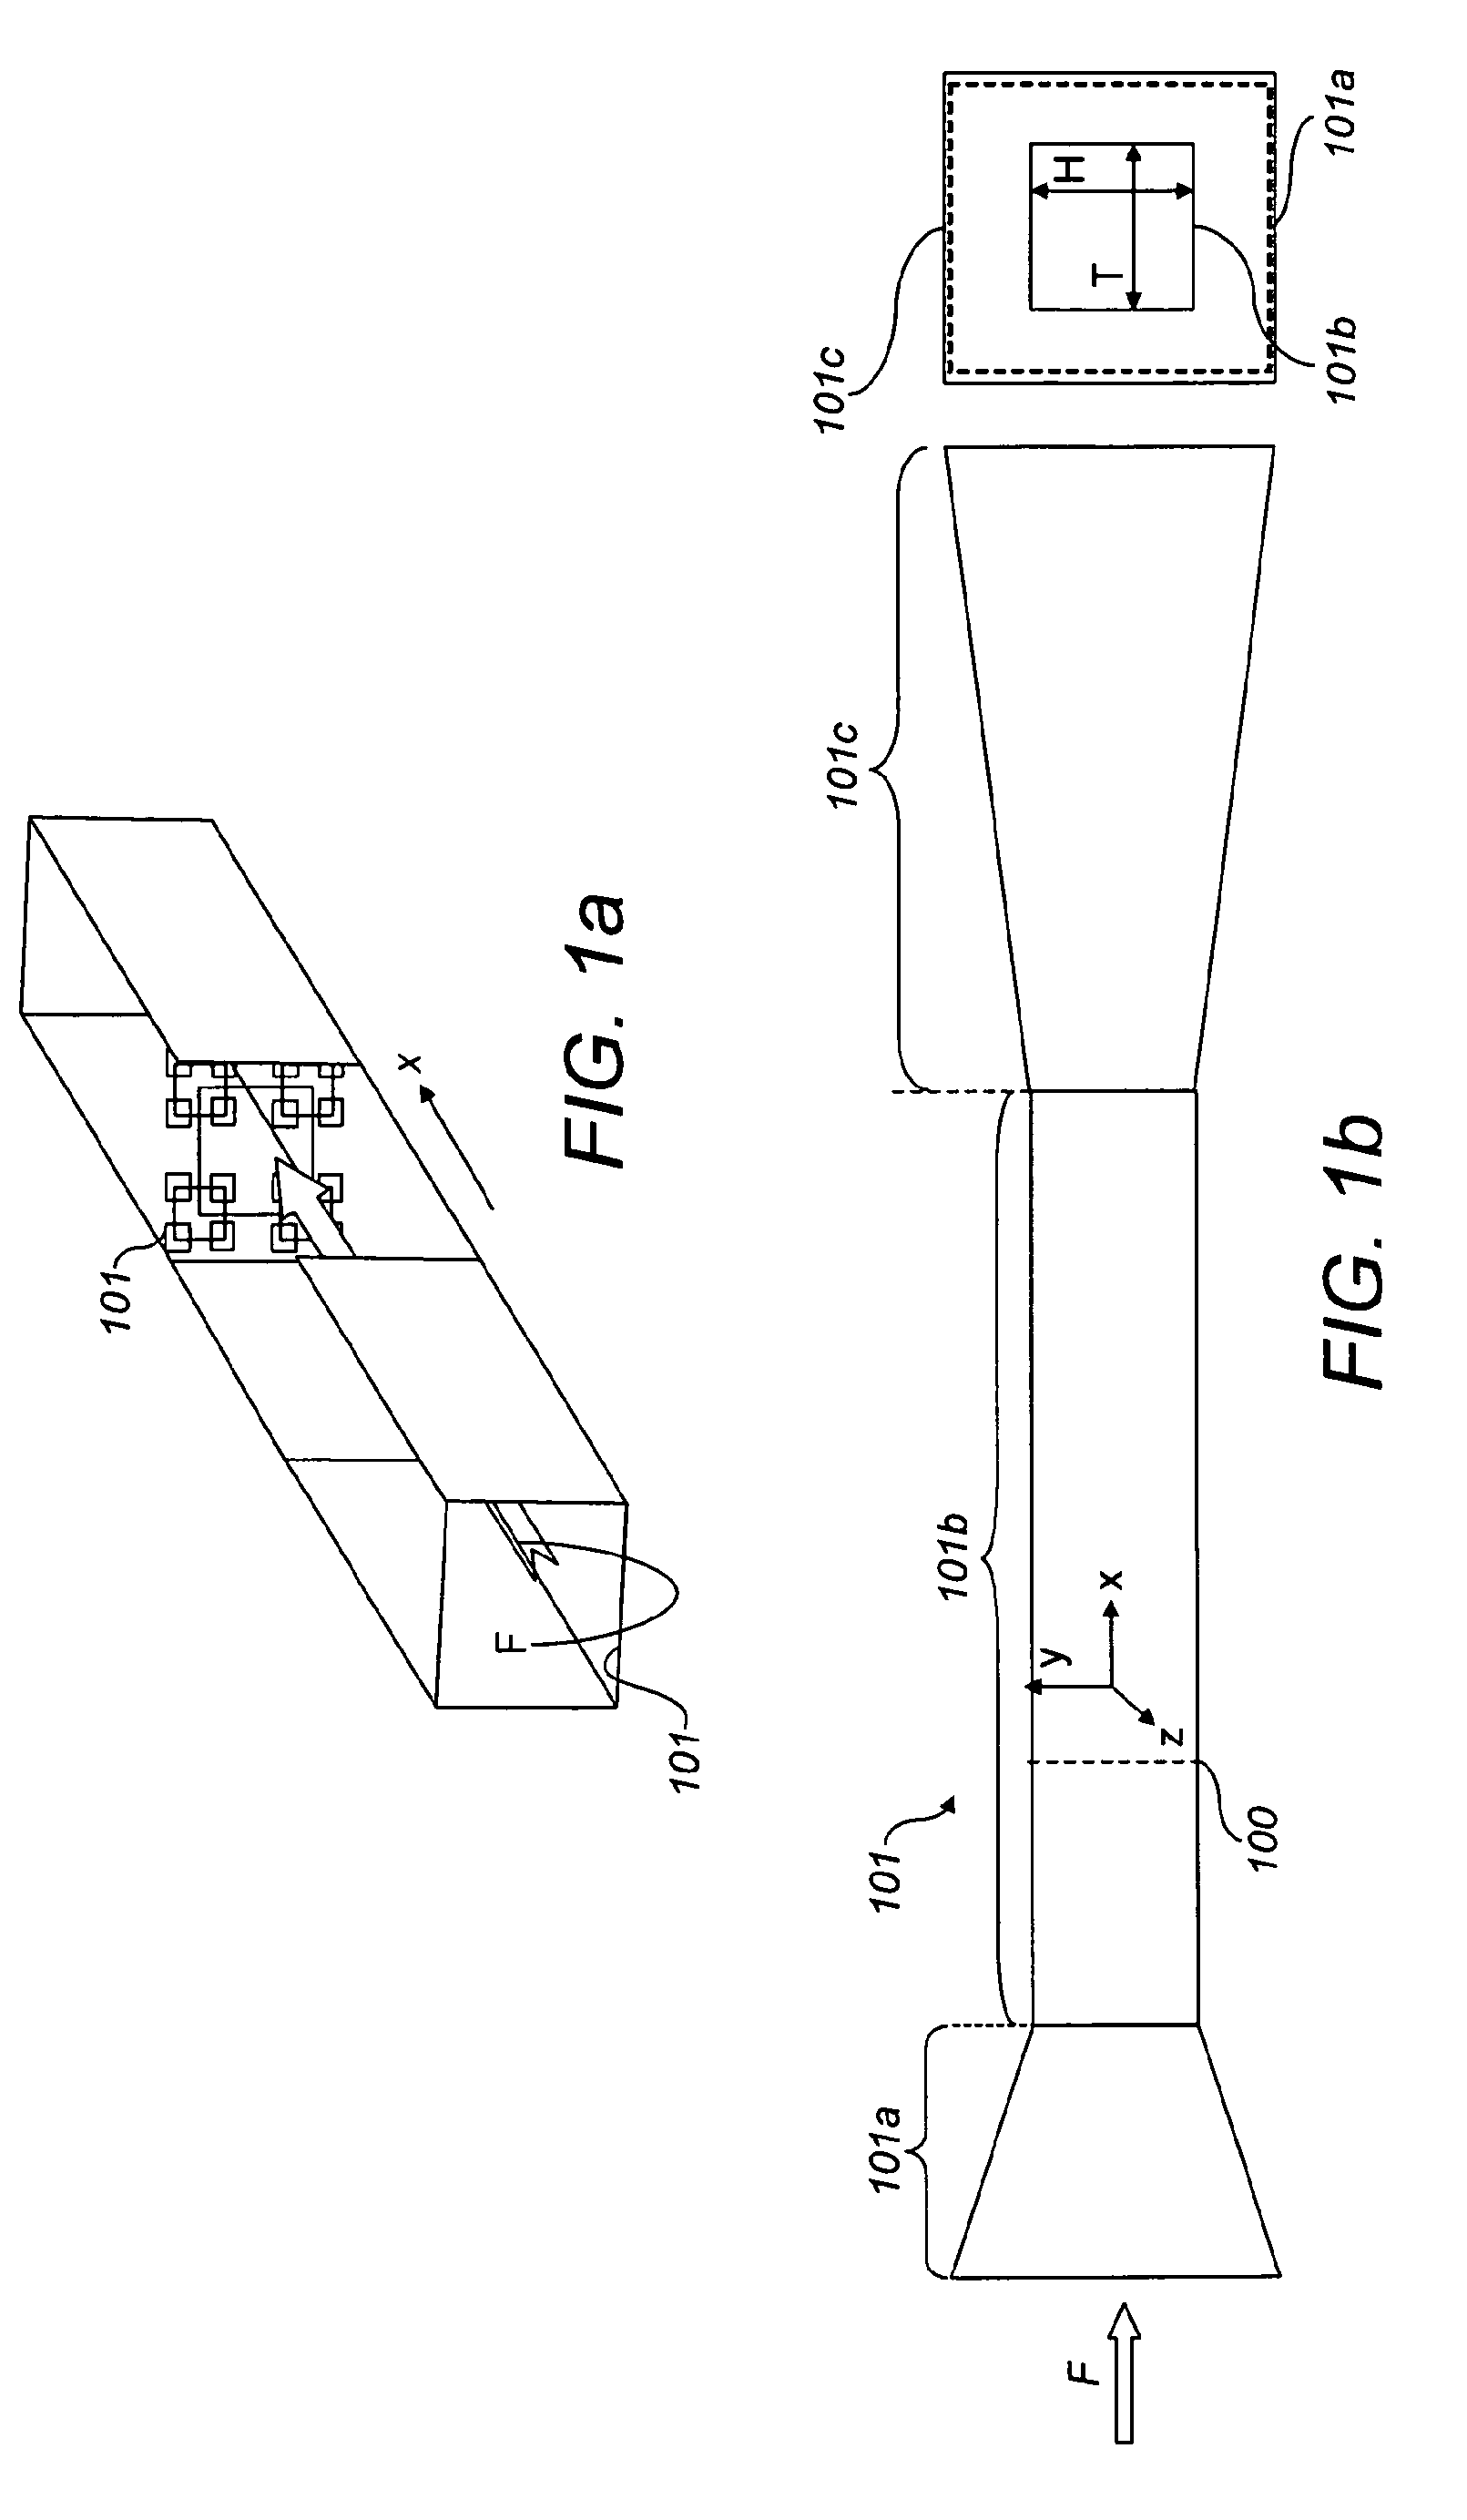 Fluid flow modification apparatus